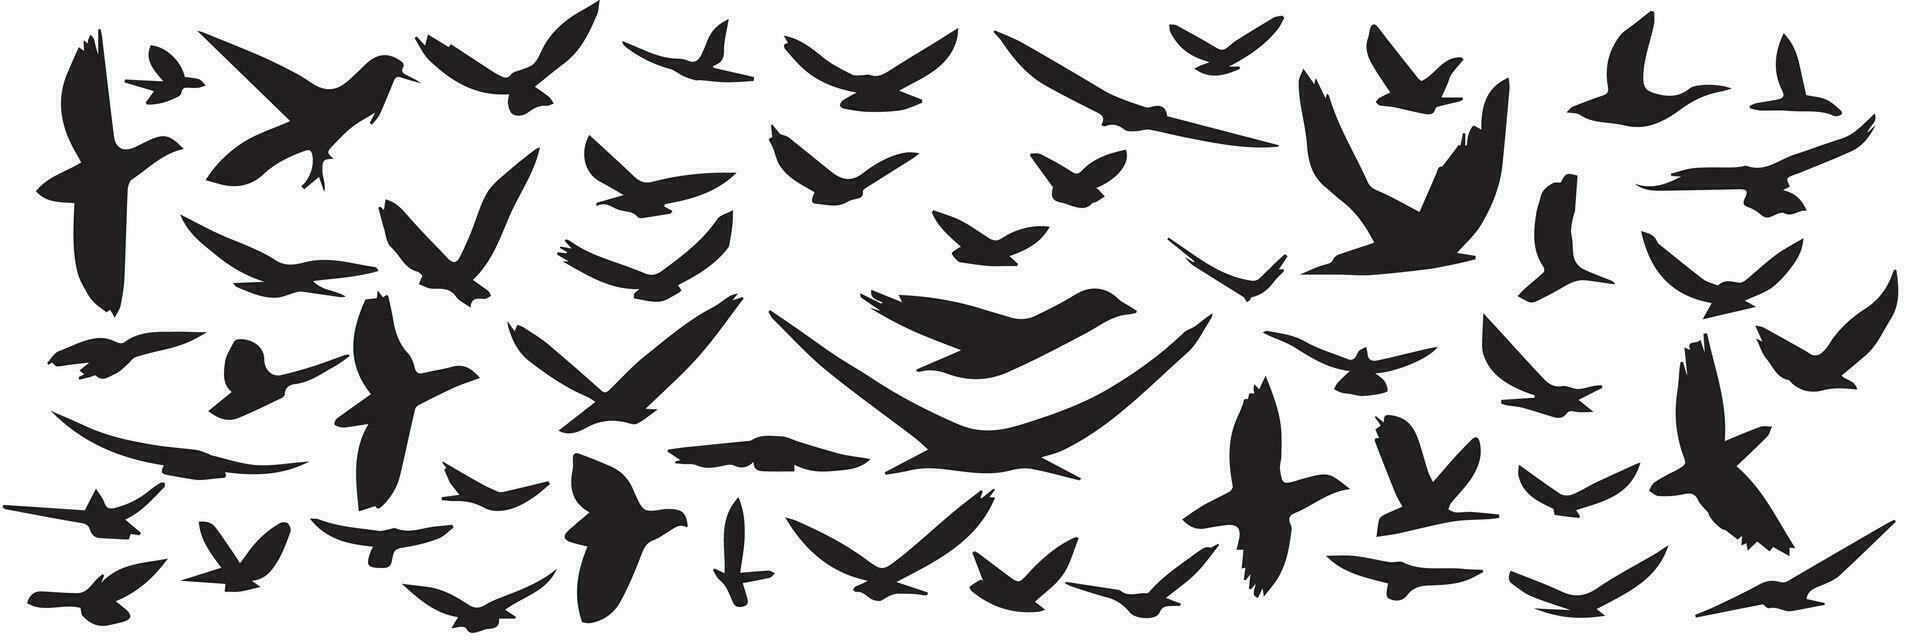 grand collection de main tiré en volant des oiseaux silhouette. ensemble de silhouette de en volant des oiseaux. vecteur illustraiton.